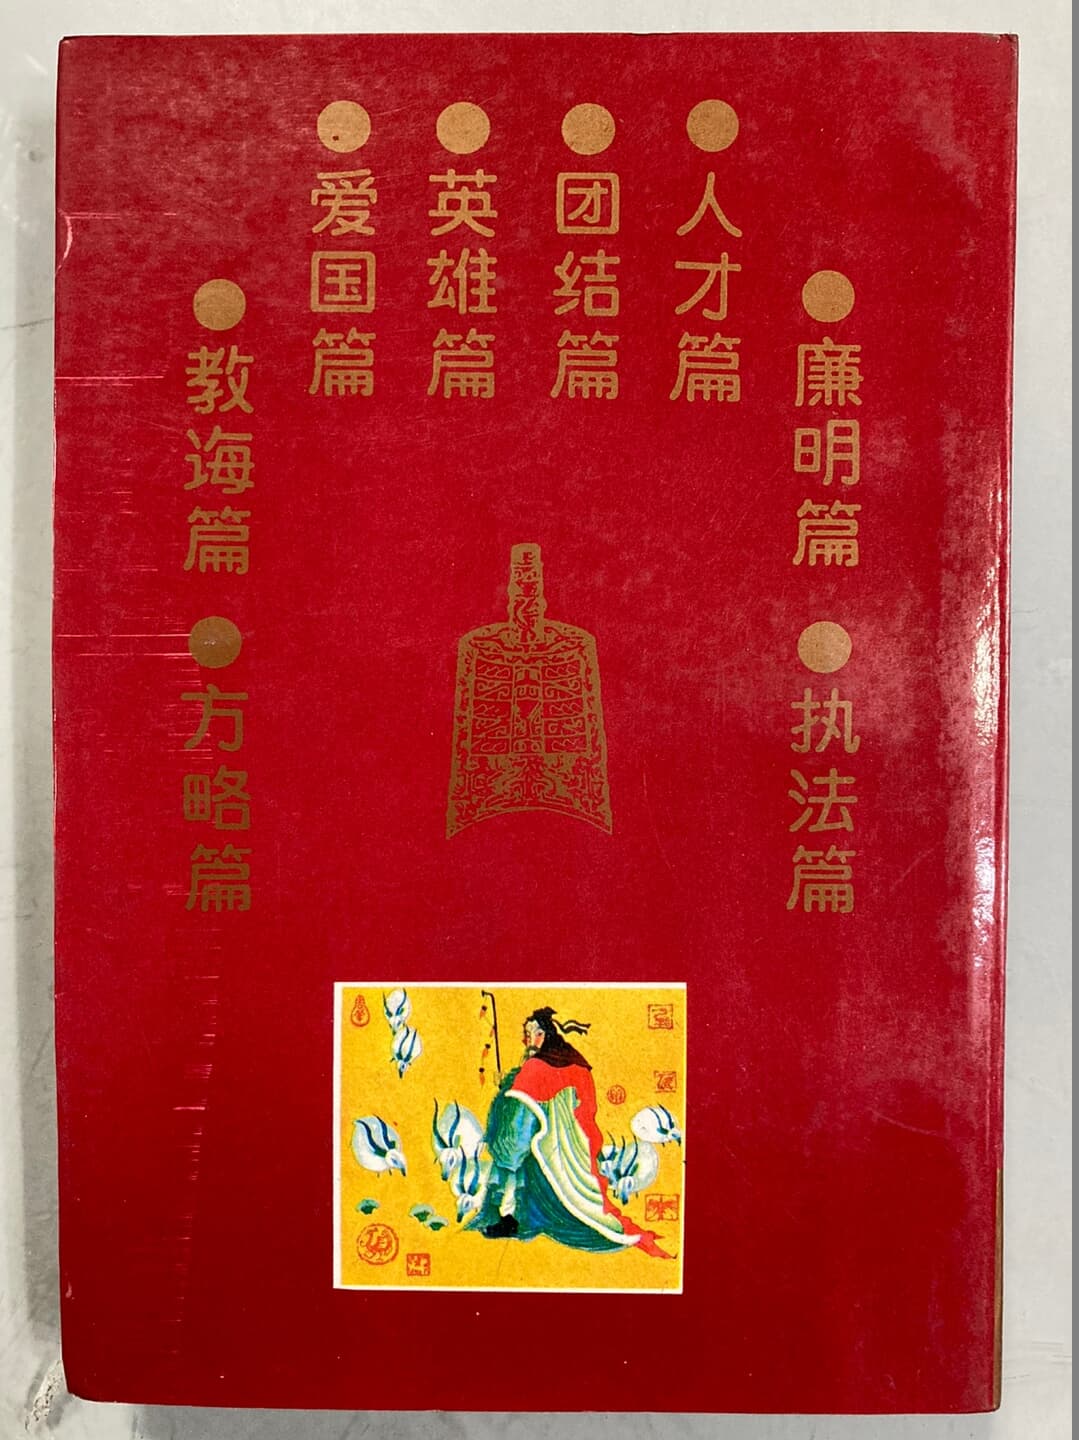 자치통감(資治通鑑) 도화본(圖畵本) 전8권 - 중국어본 